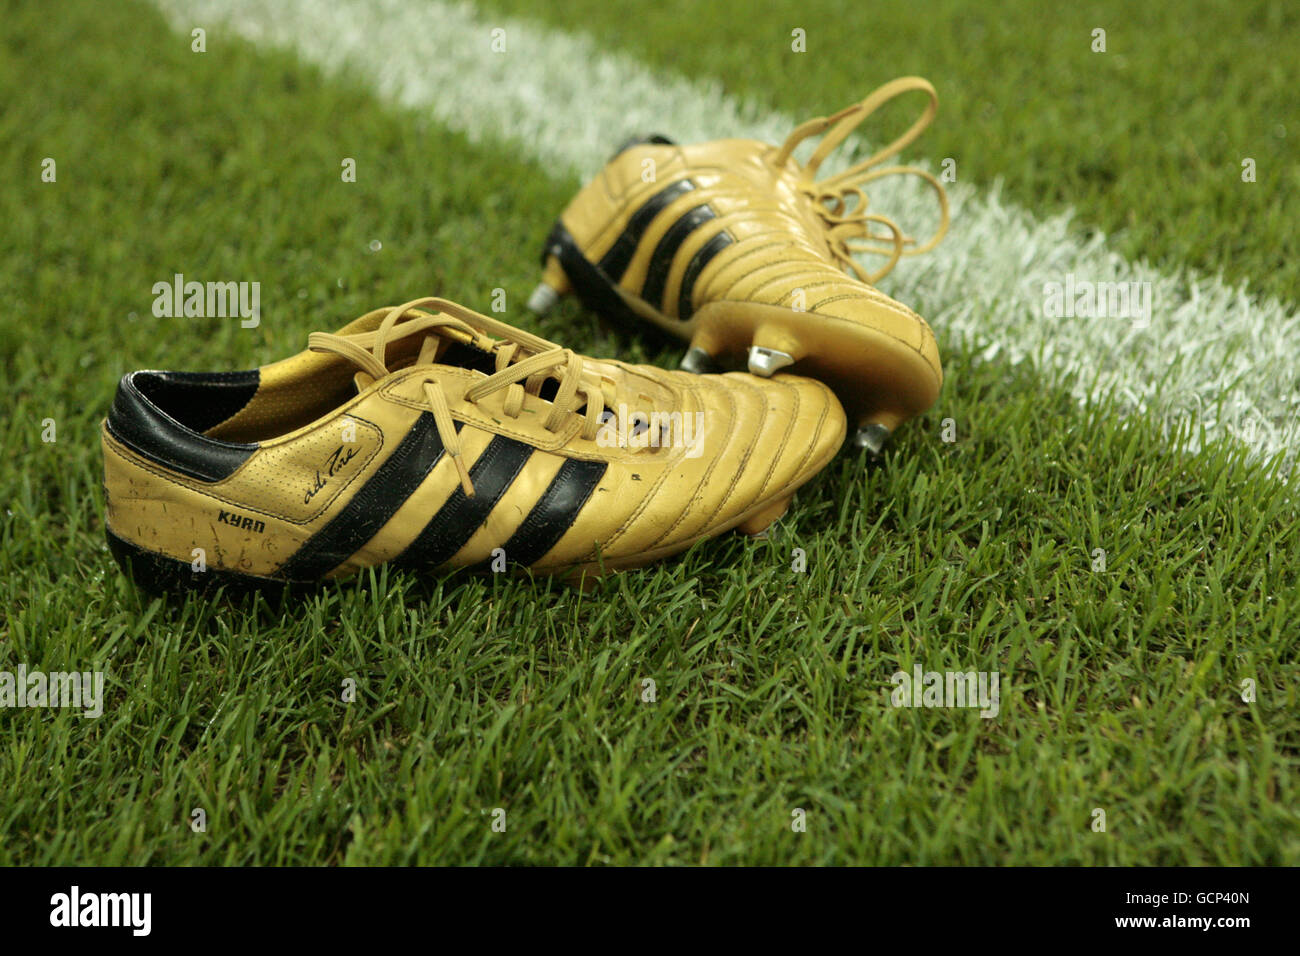 Detalle de botas de fútbol adidas doradas en el campo fotografías imágenes de resolución - Alamy